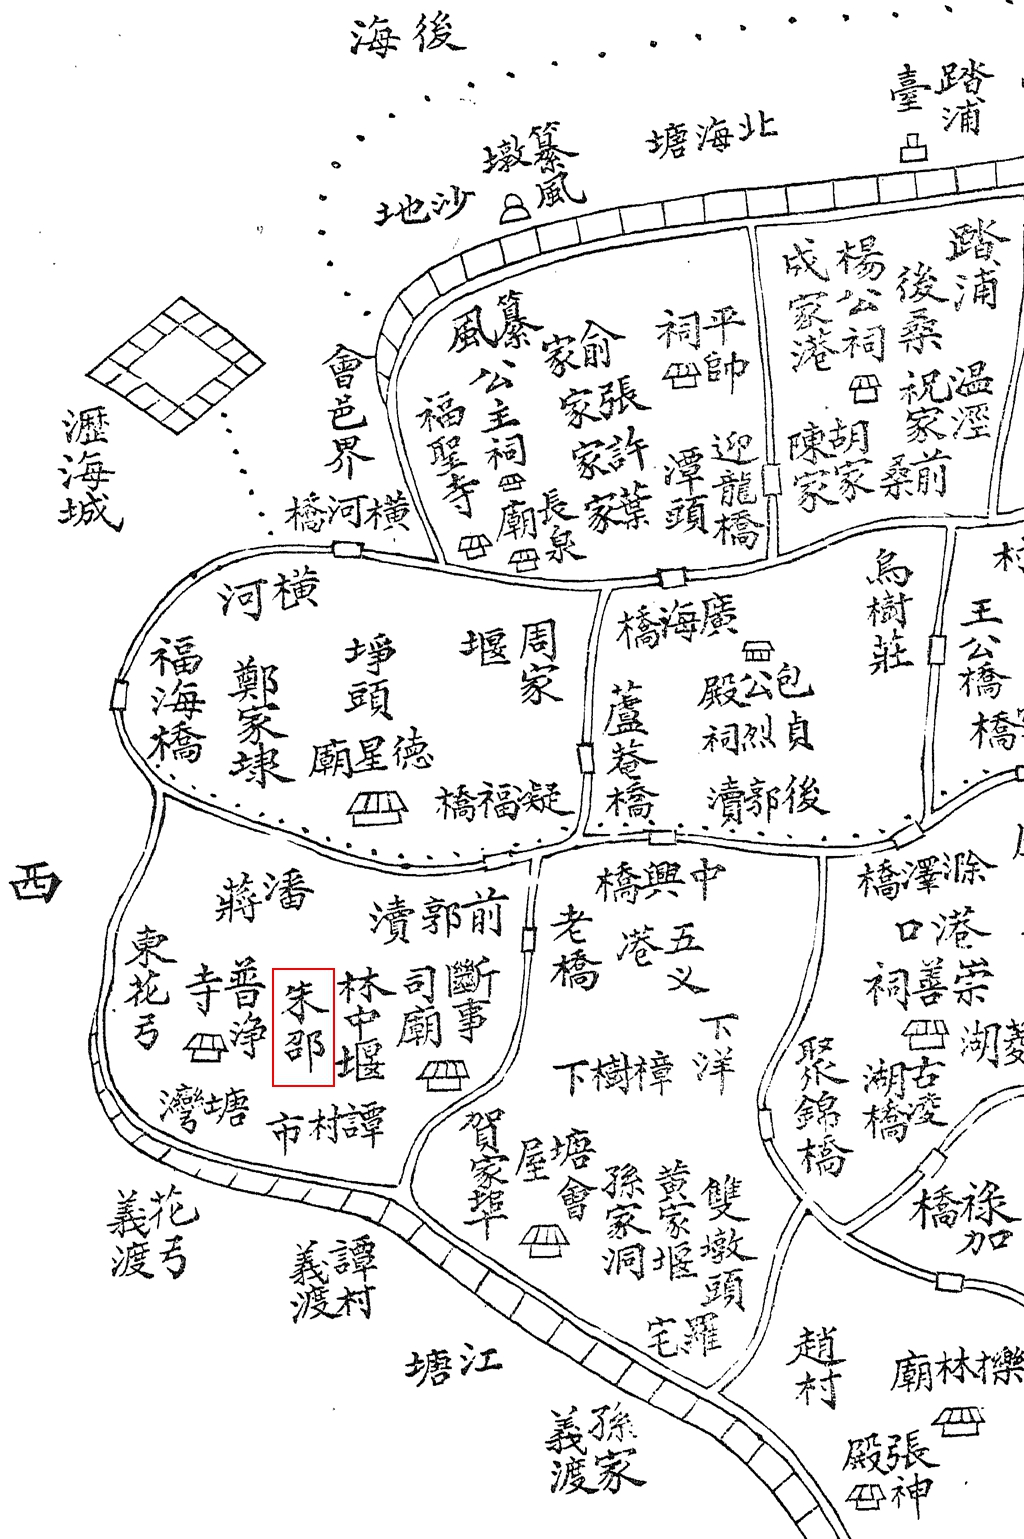 崧厦地图2_朱邵.jpg